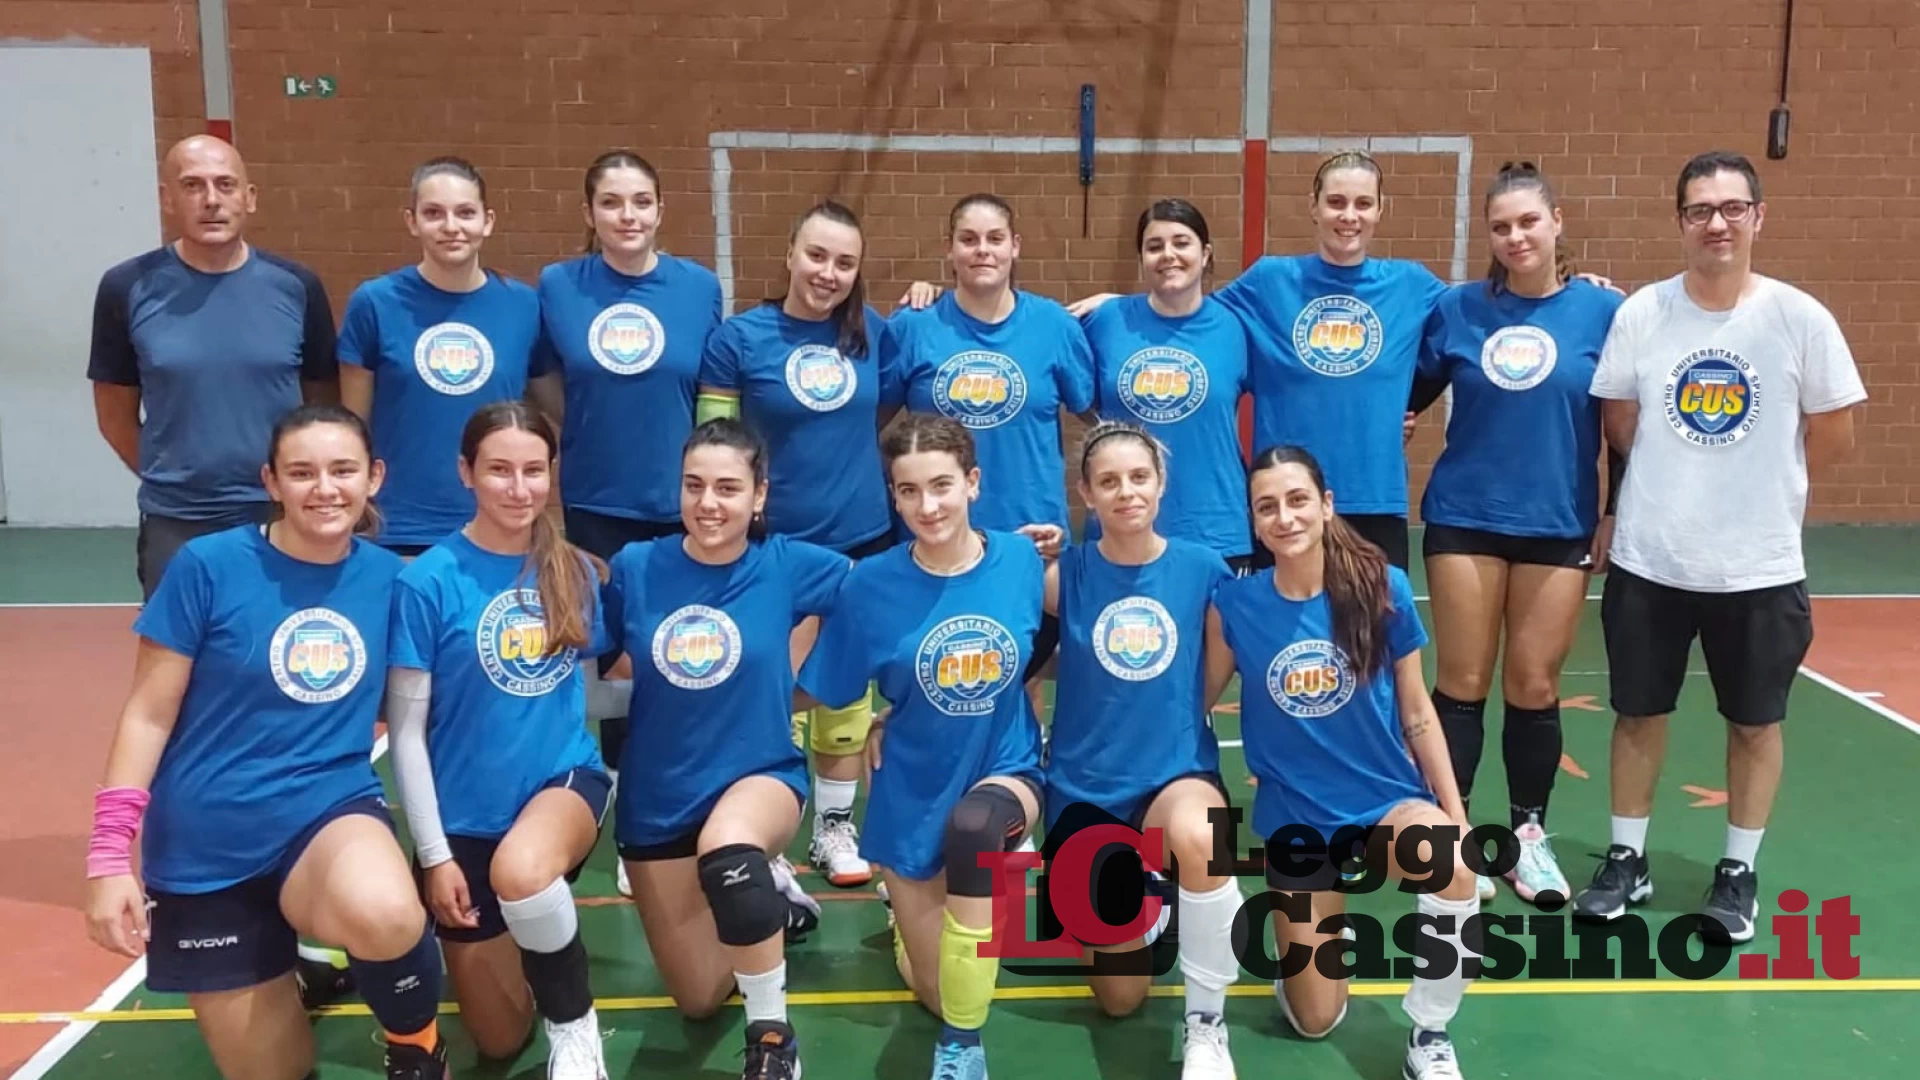 La squadra di pallavolo del CUS Cassino debutta nel campionato regionale di serie D femminile